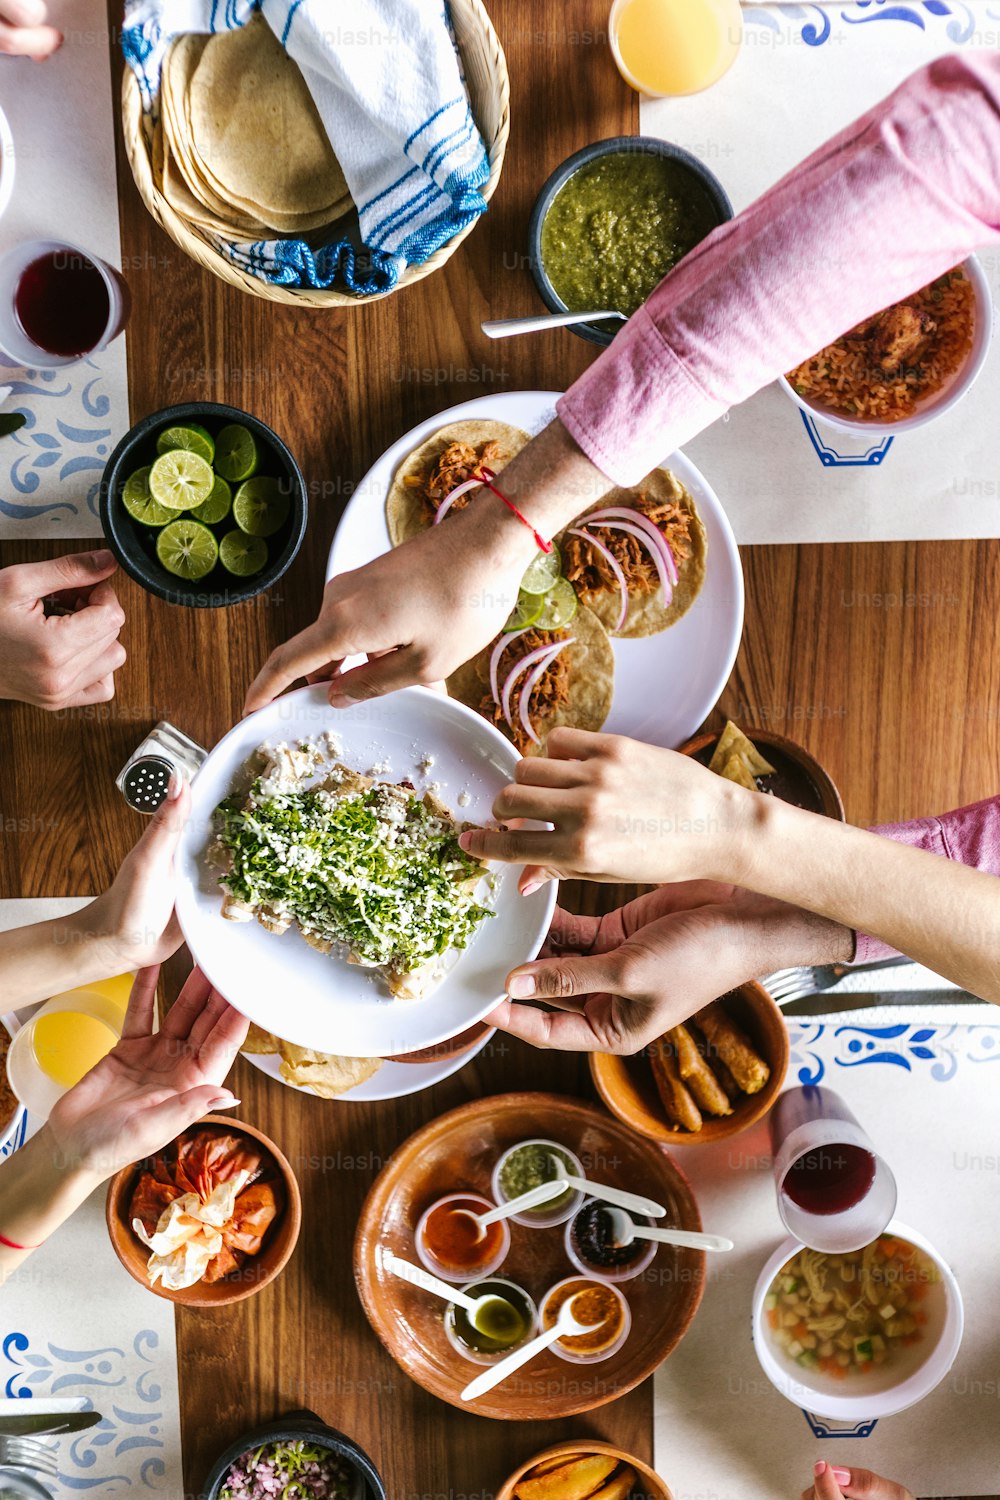 groupe d’amis latins mangeant des tacos mexicains et de la nourriture traditionnelle, des collations et des mains de personnes sur la table, vue de dessus. Cuisine mexicaine Amérique latine